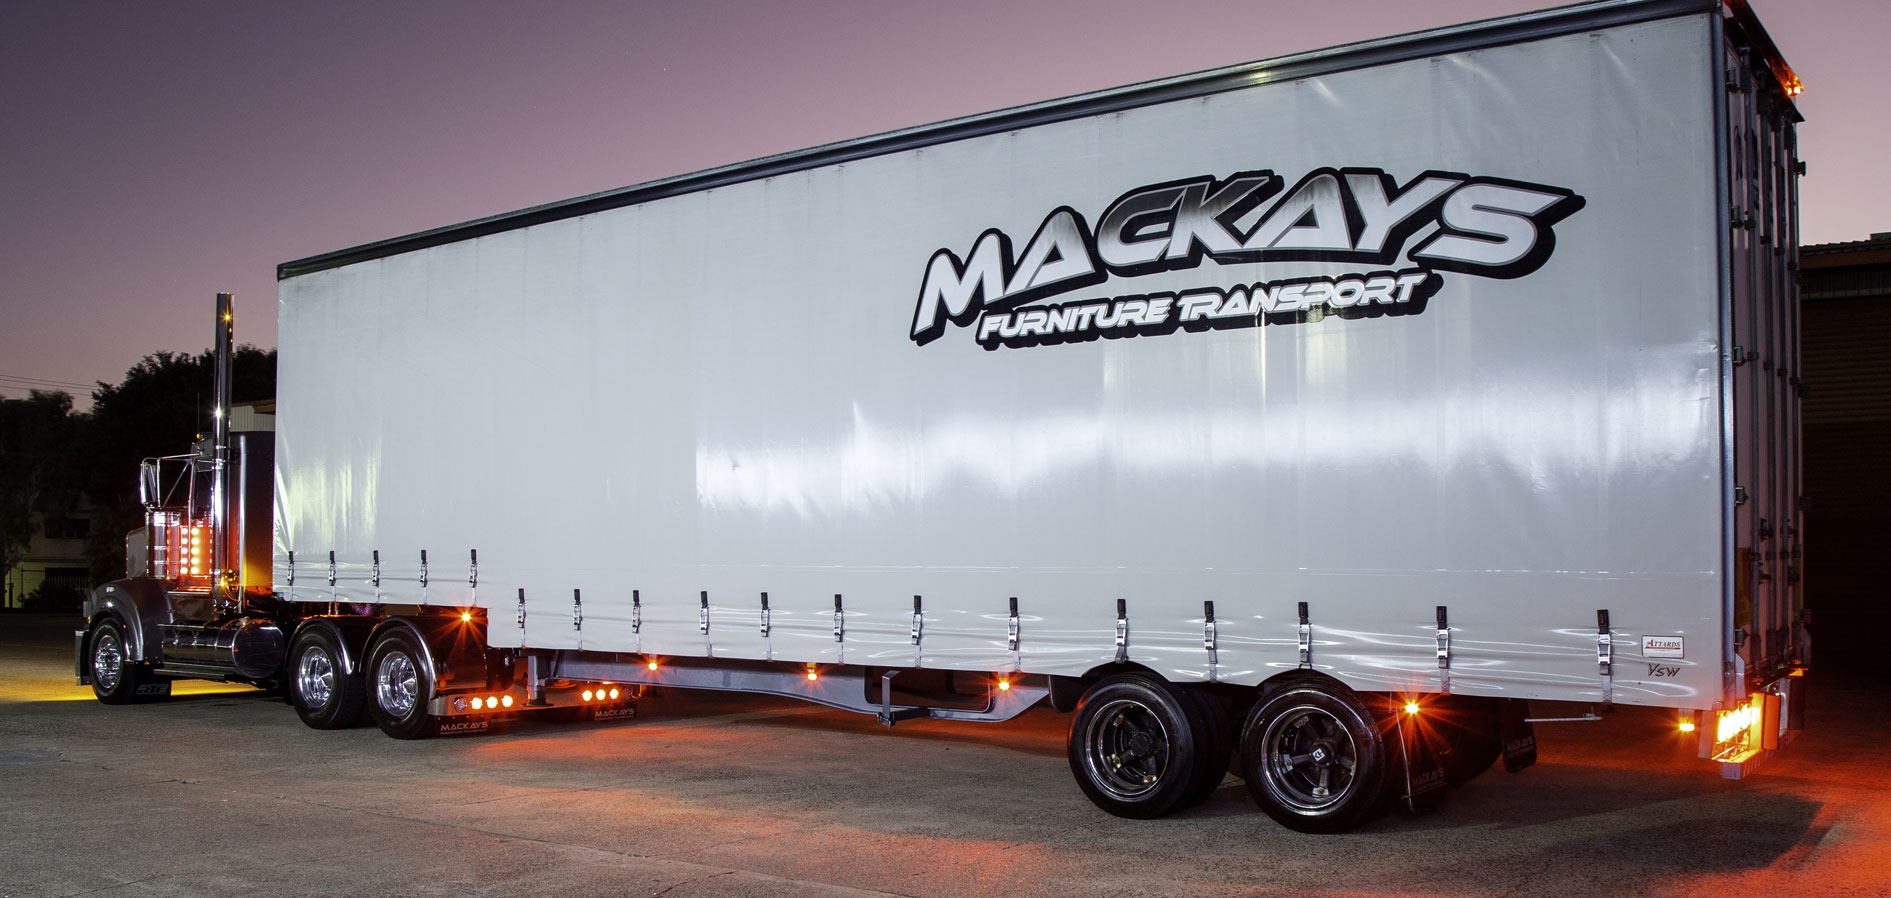 Mackay's Transport Furniture